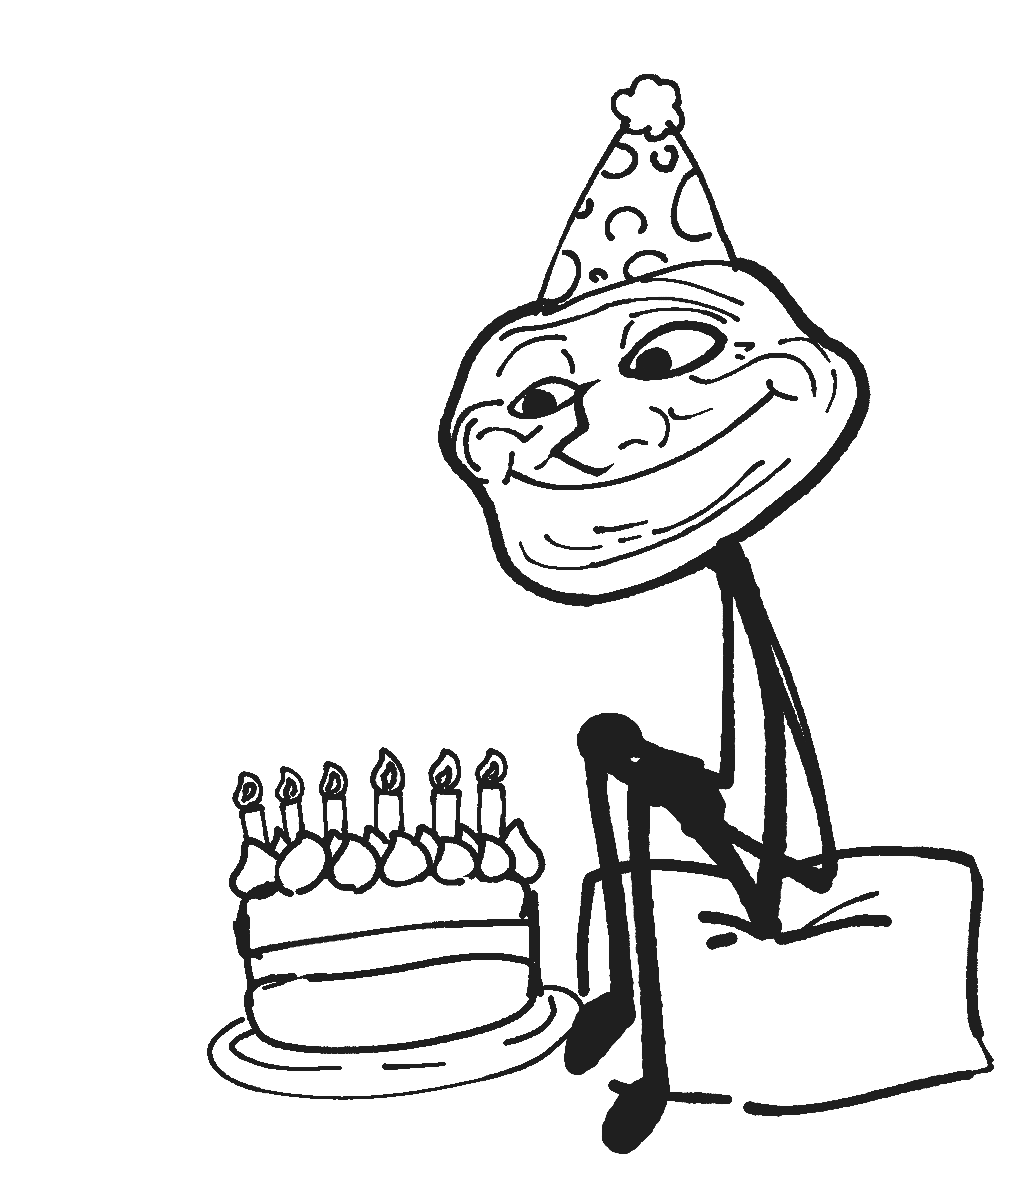 Tổng hợp 100 lời chúc sinh nhật bạn thân hay lầy lội bá đạo  Coolmate